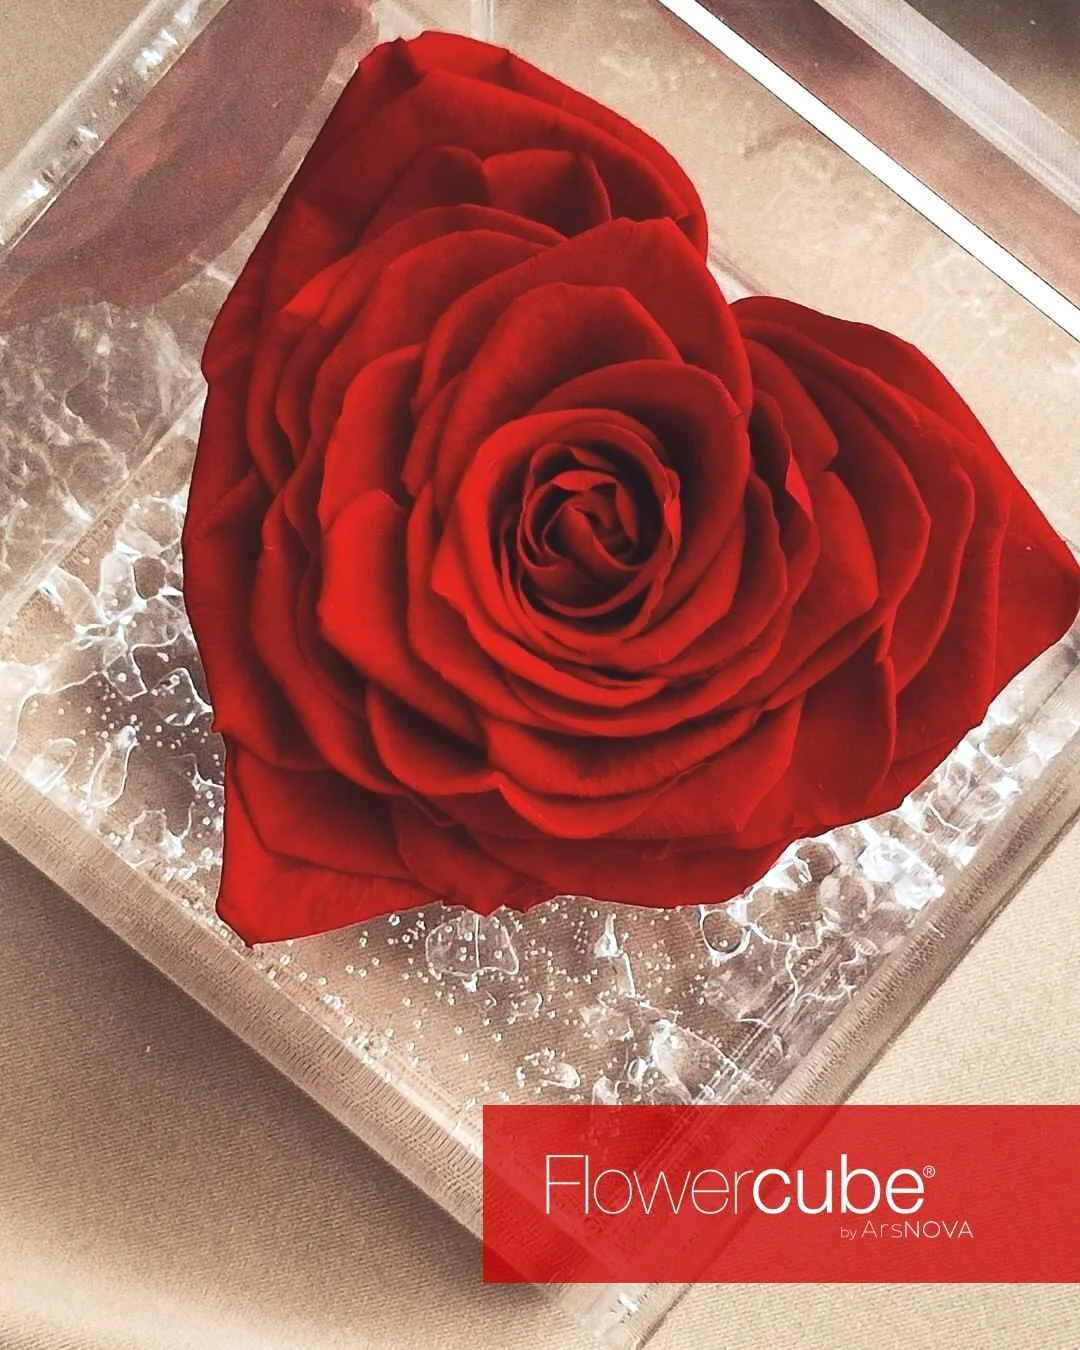 Set Regalo San Valentino rosa rossa stabilizzata cuore più lampada led per rose stabilizzate flowercube Ideafiori 3